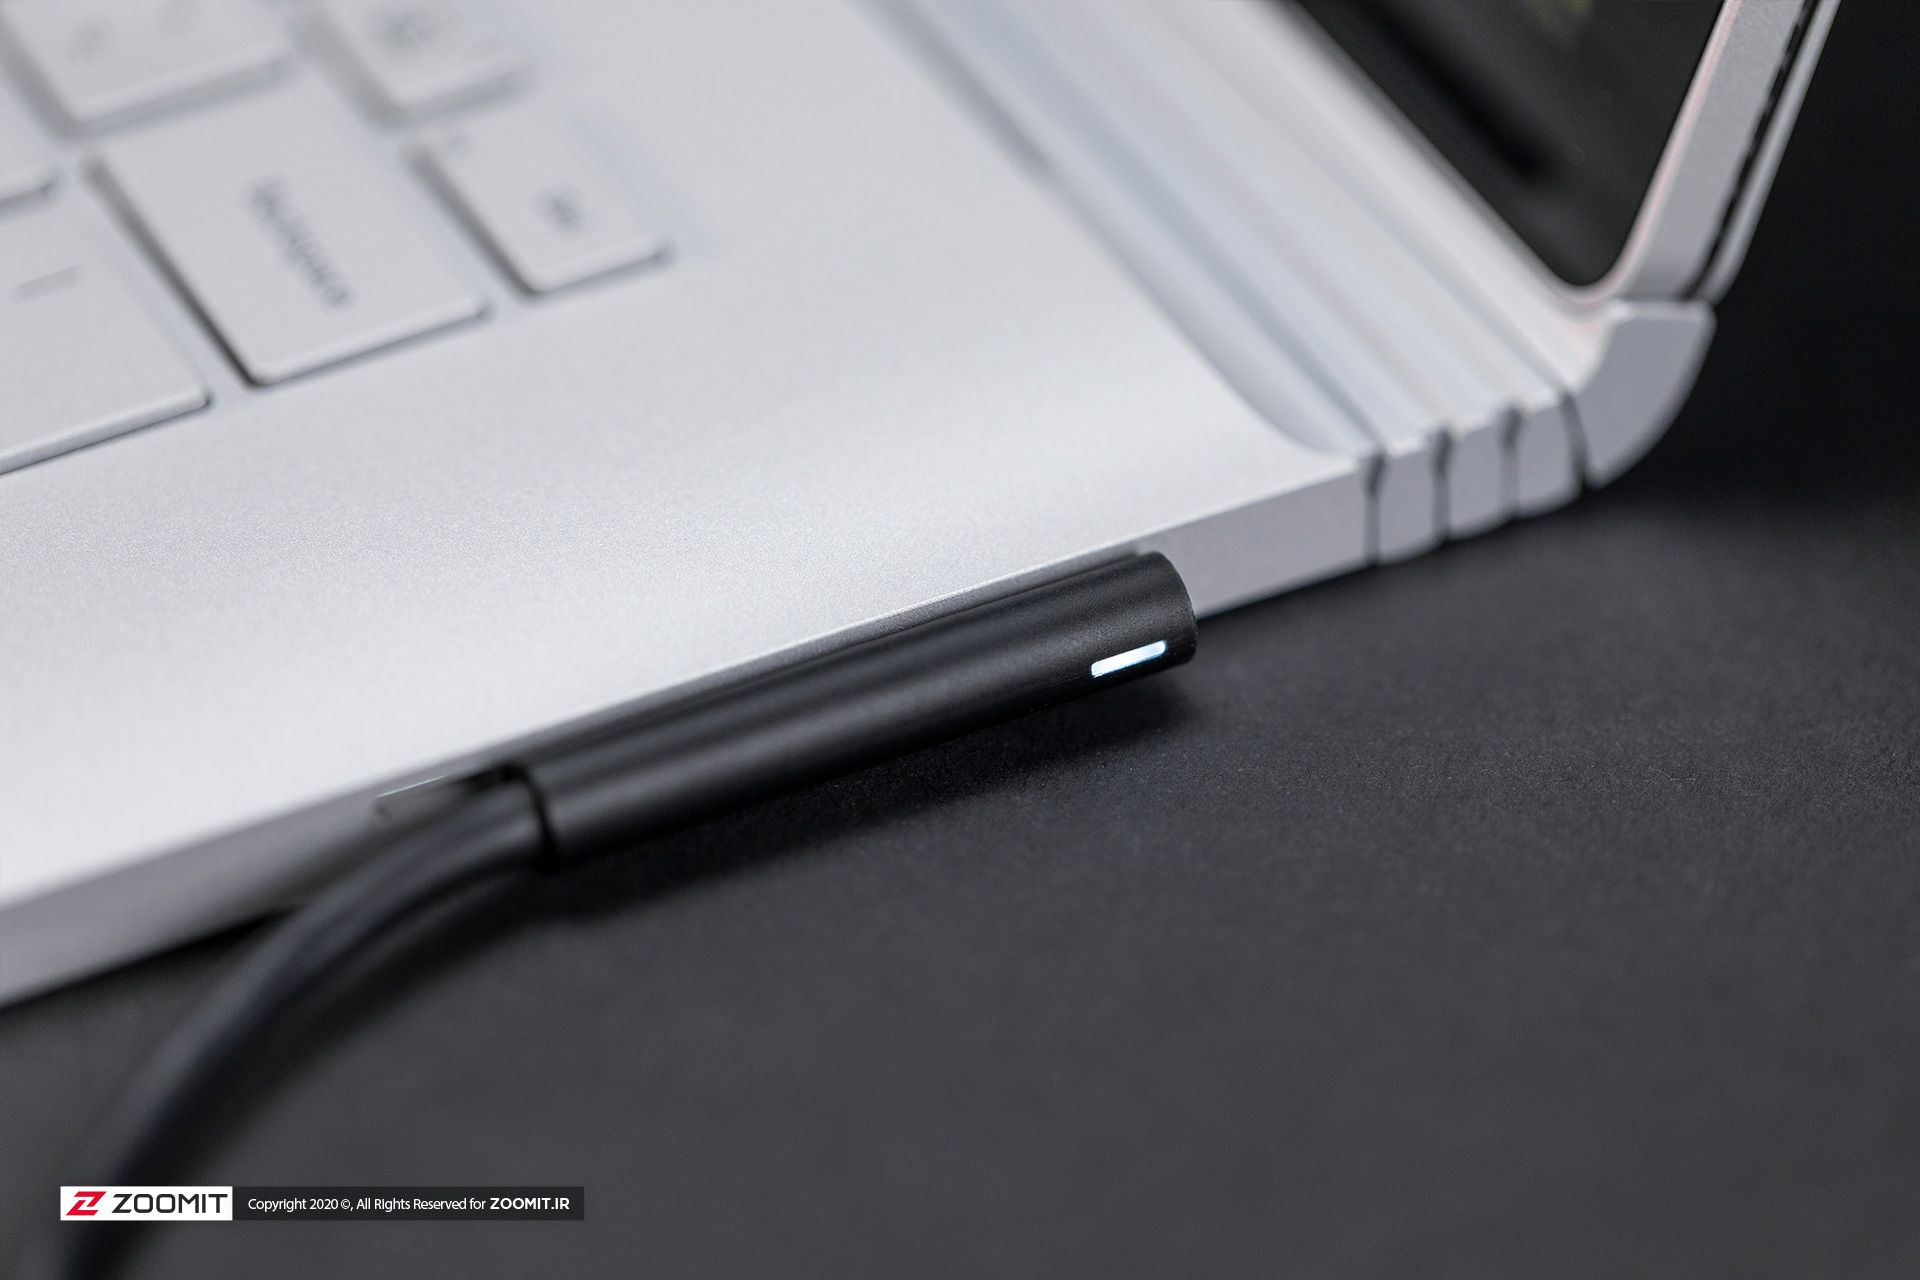 مرجع متخصصين ايران سرفيس بوك ۳ مايكروسافت / Microsoft Surface Book 3 در حال شارژ با سرفيس كانكت